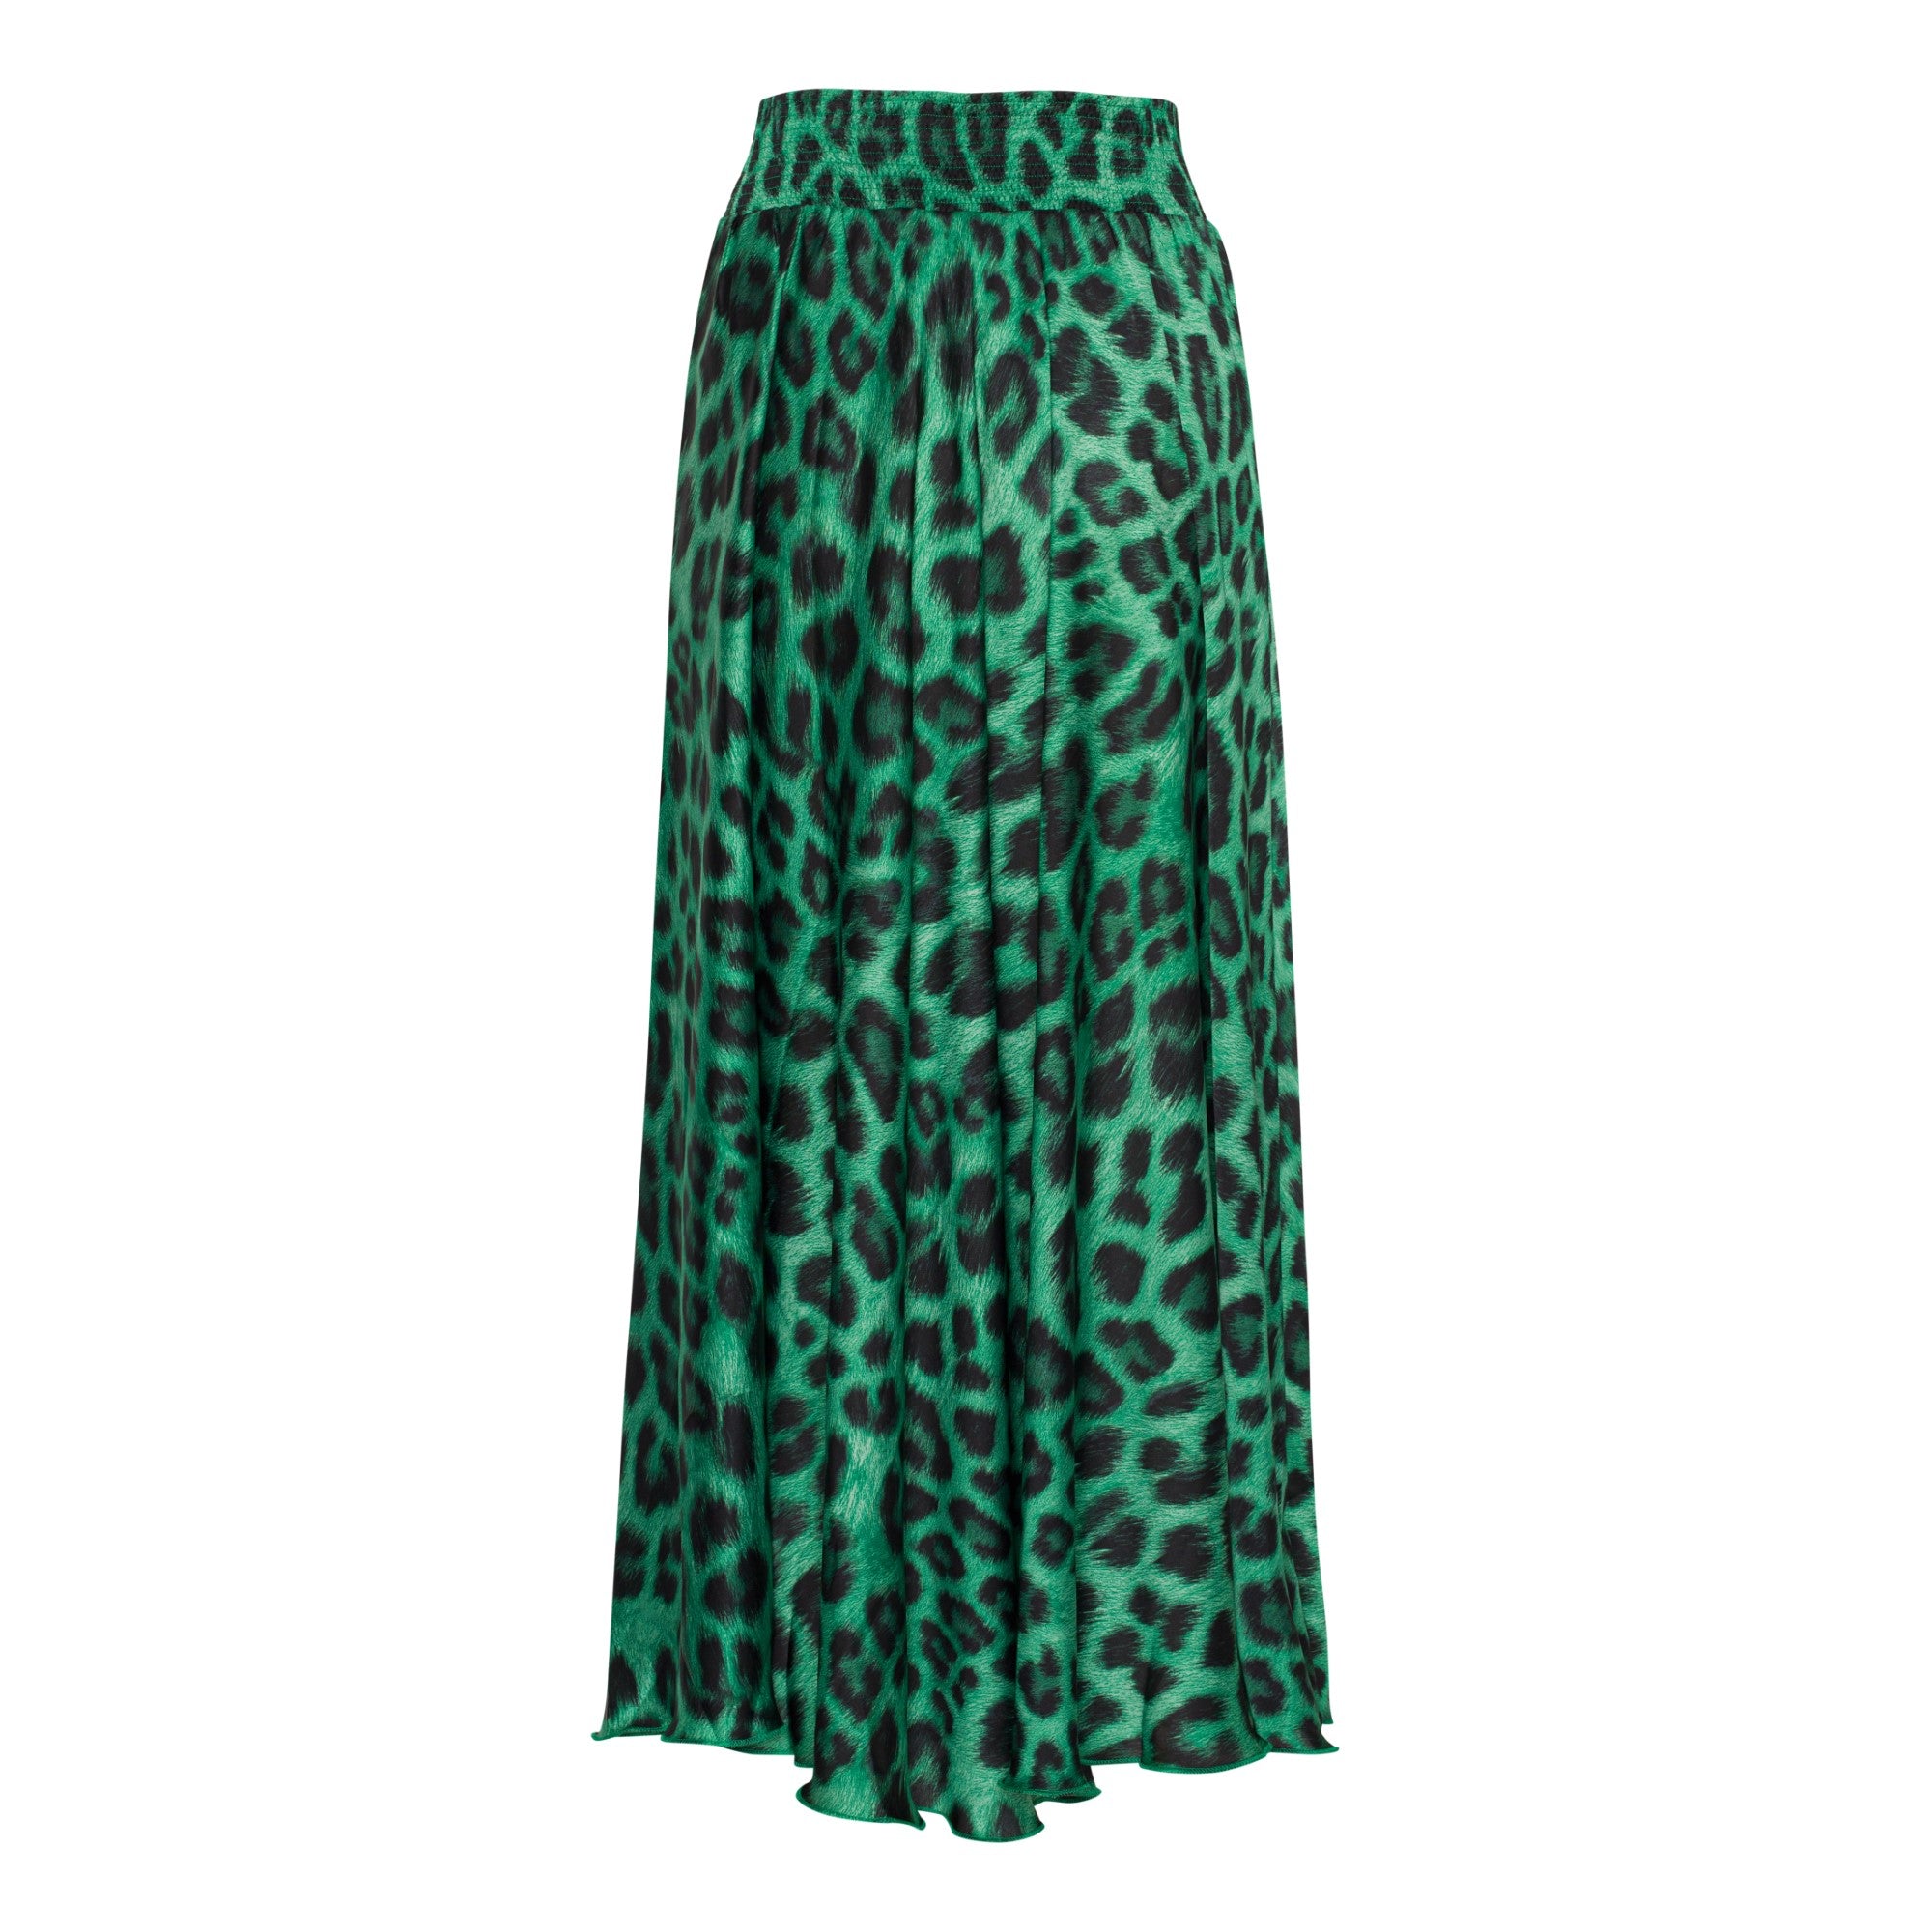 Karmamia Savannah Skirt Emerald Leo